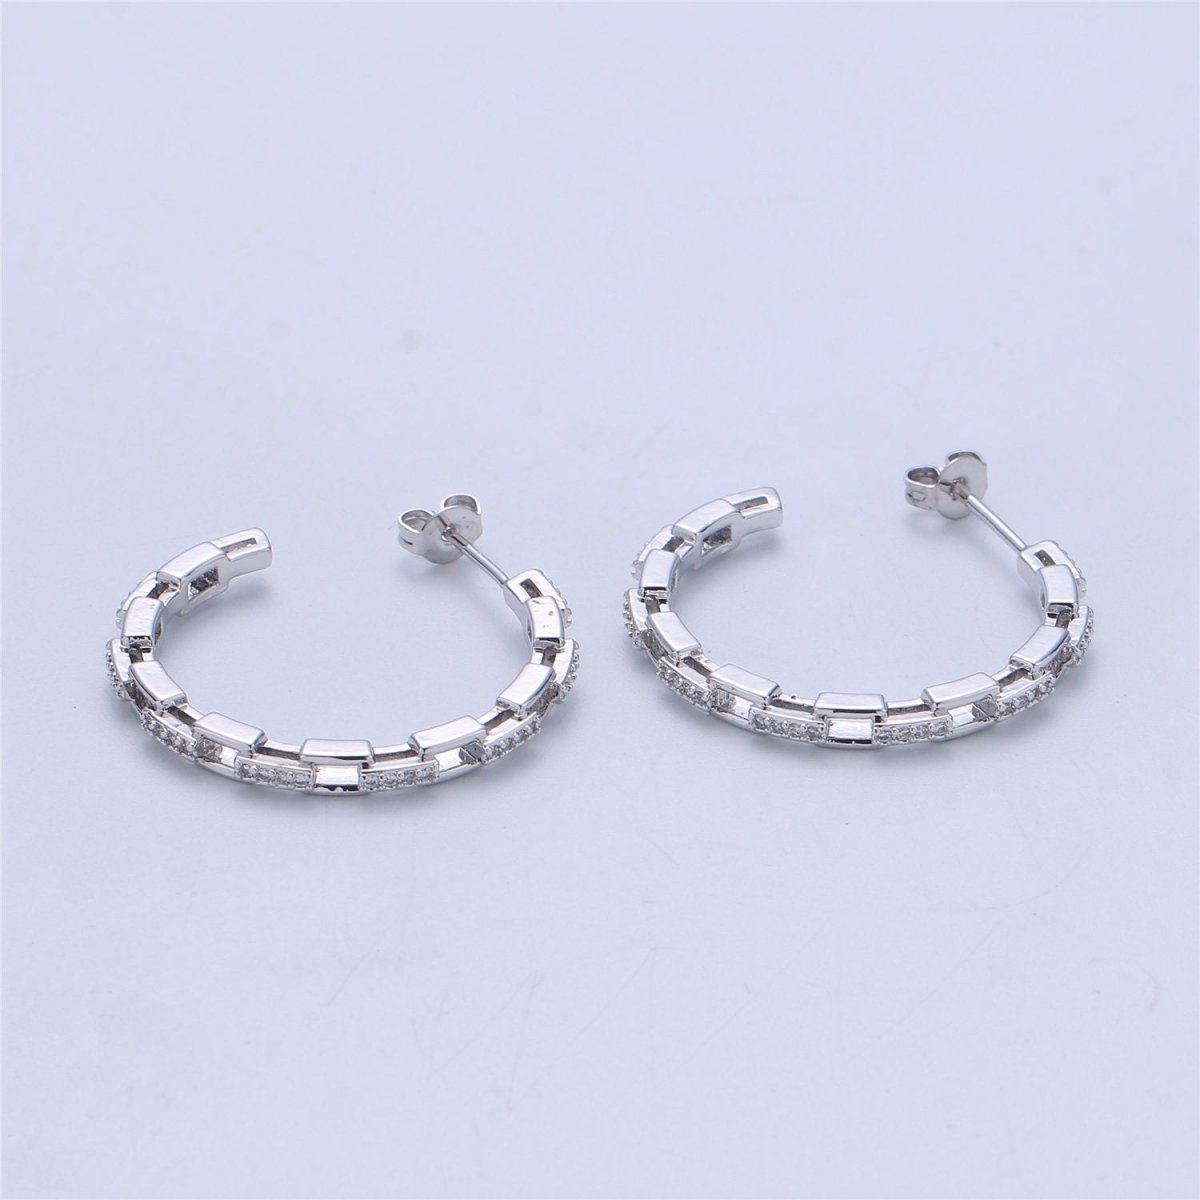 Chain Hoop Earrings - Dainty Link Hoop Earrings - Minimalist Hoops - Tiny Hoop Earrings - Linked Hoop Earring - Cartilage Hoop - Dainty Hoop Q-537 Q-538 - DLUXCA